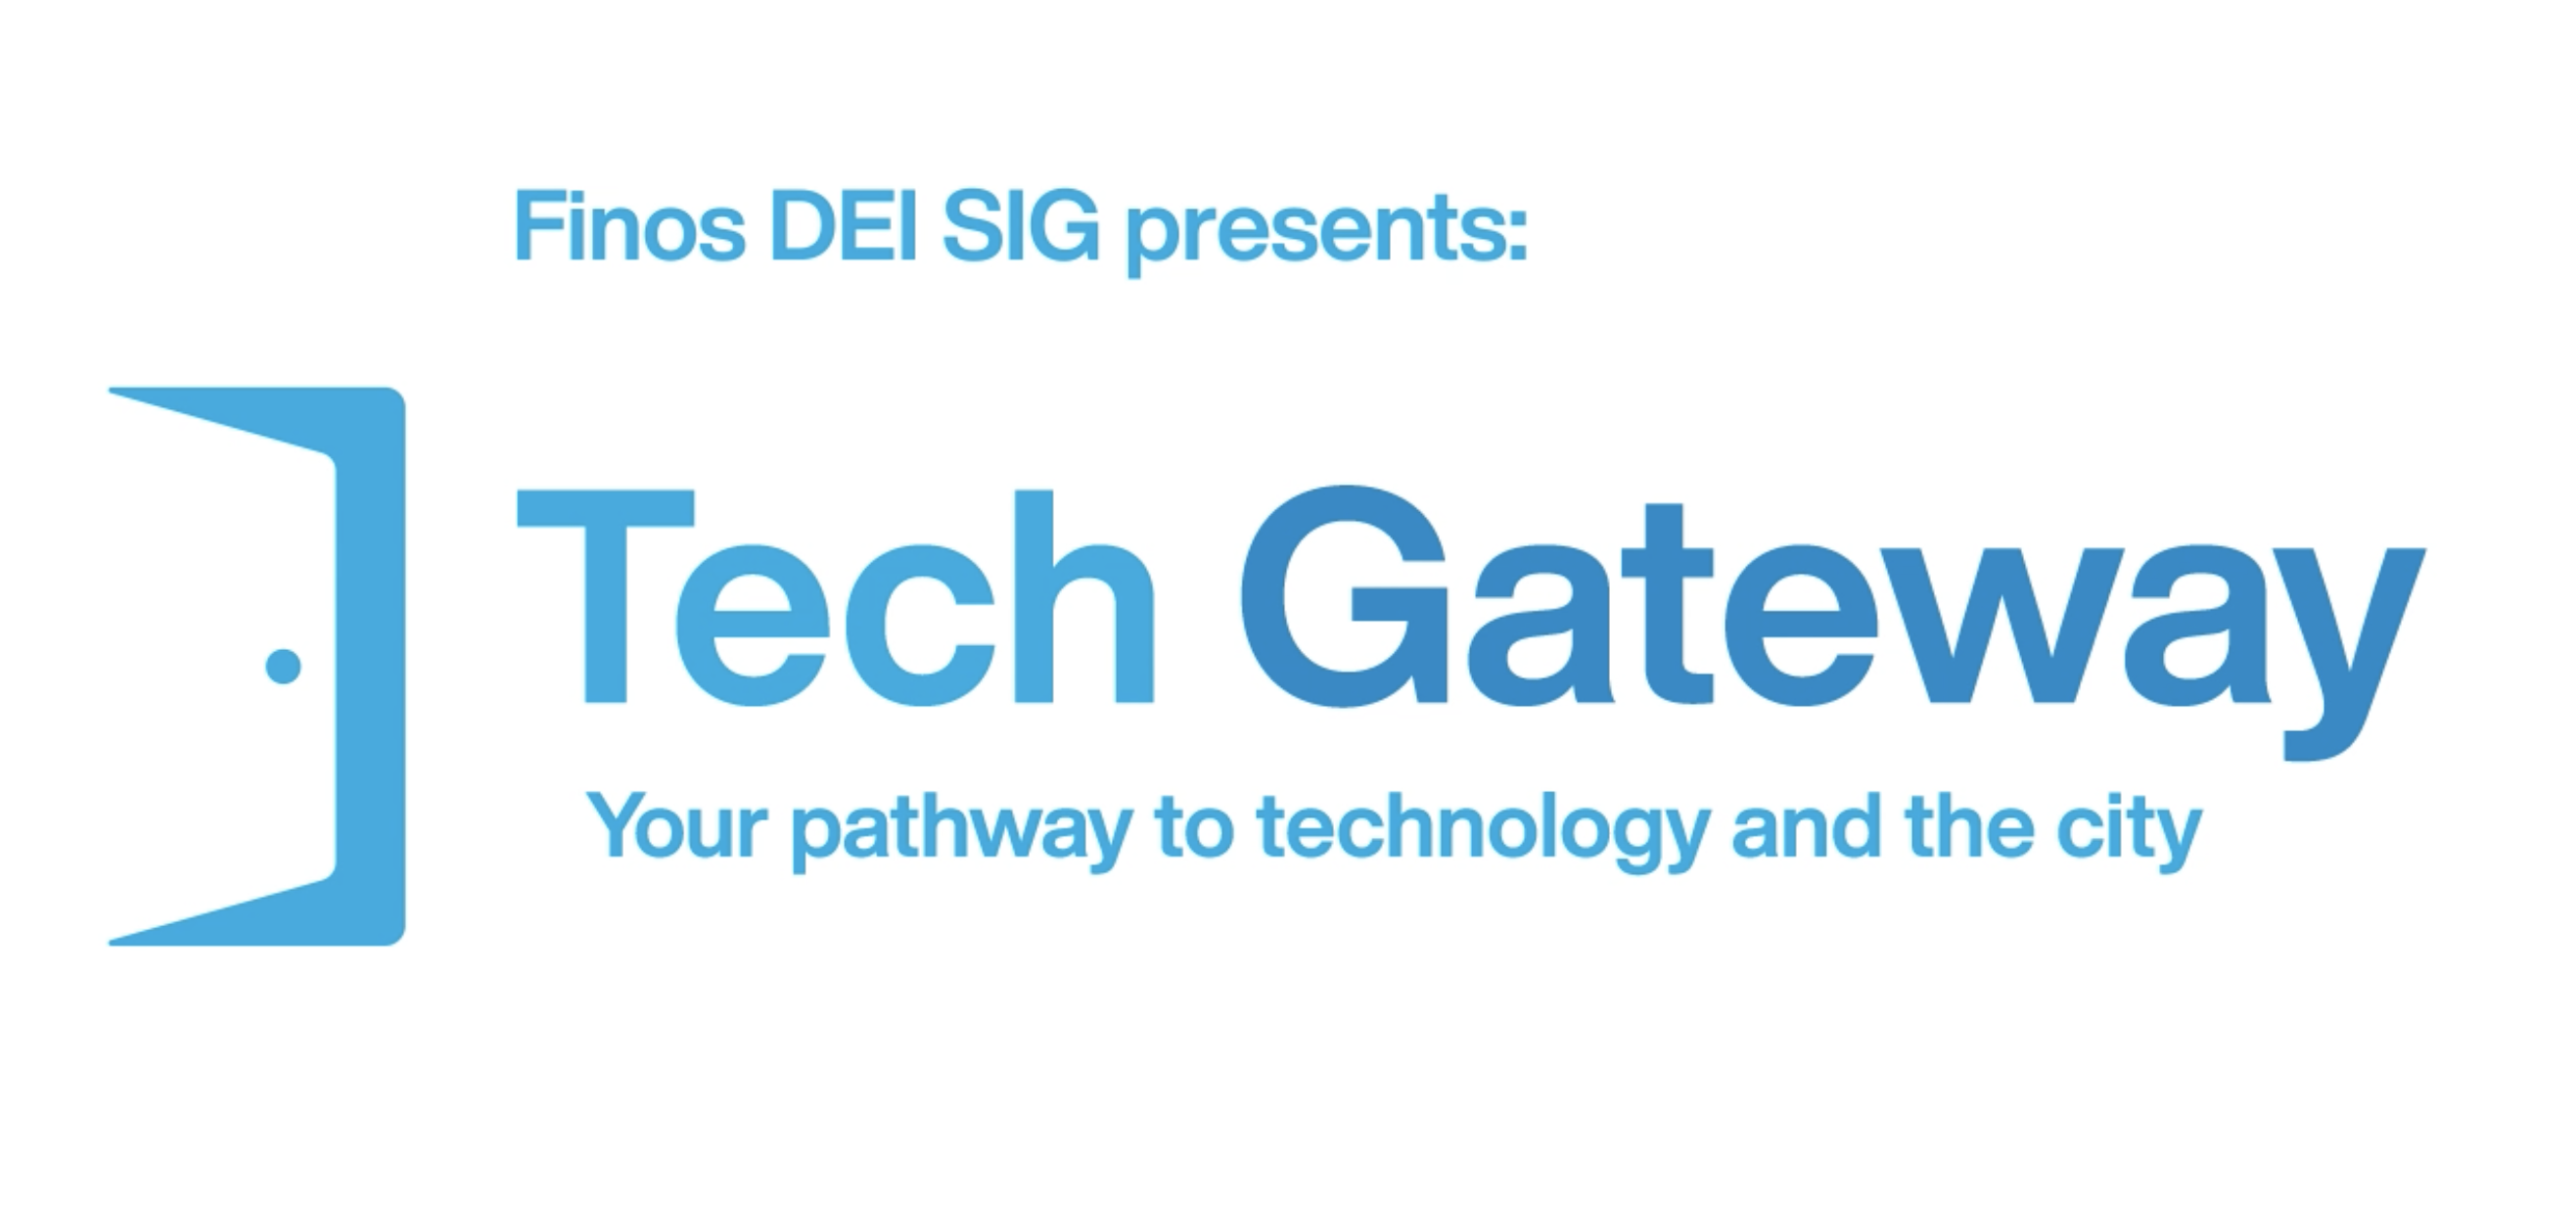 What is Tech Gateway?